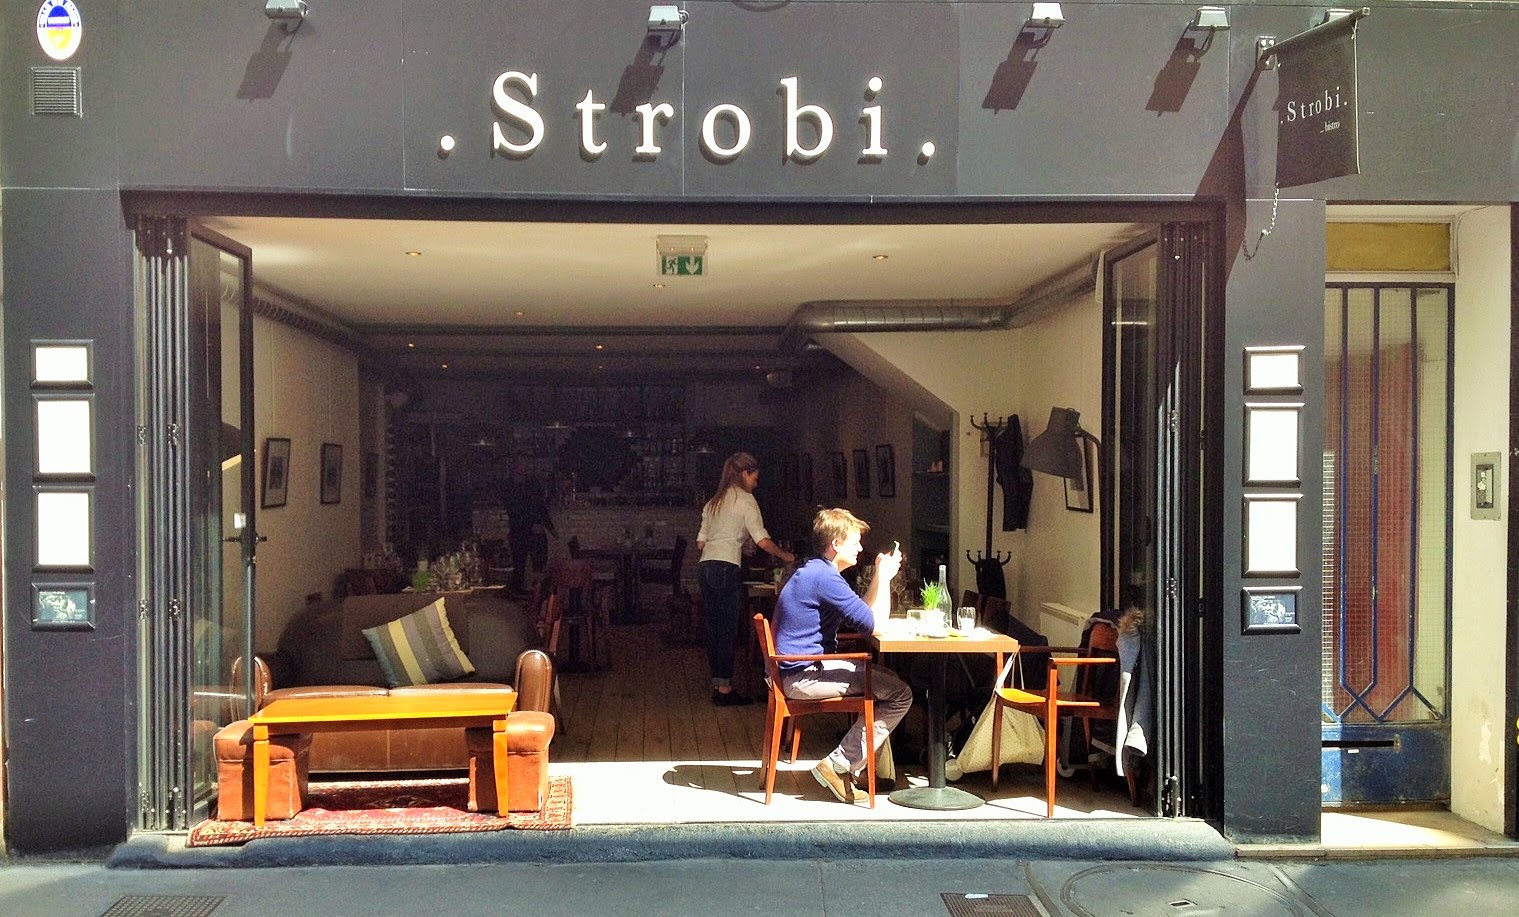 Le Strobi - restaurant - Paris place de clichy